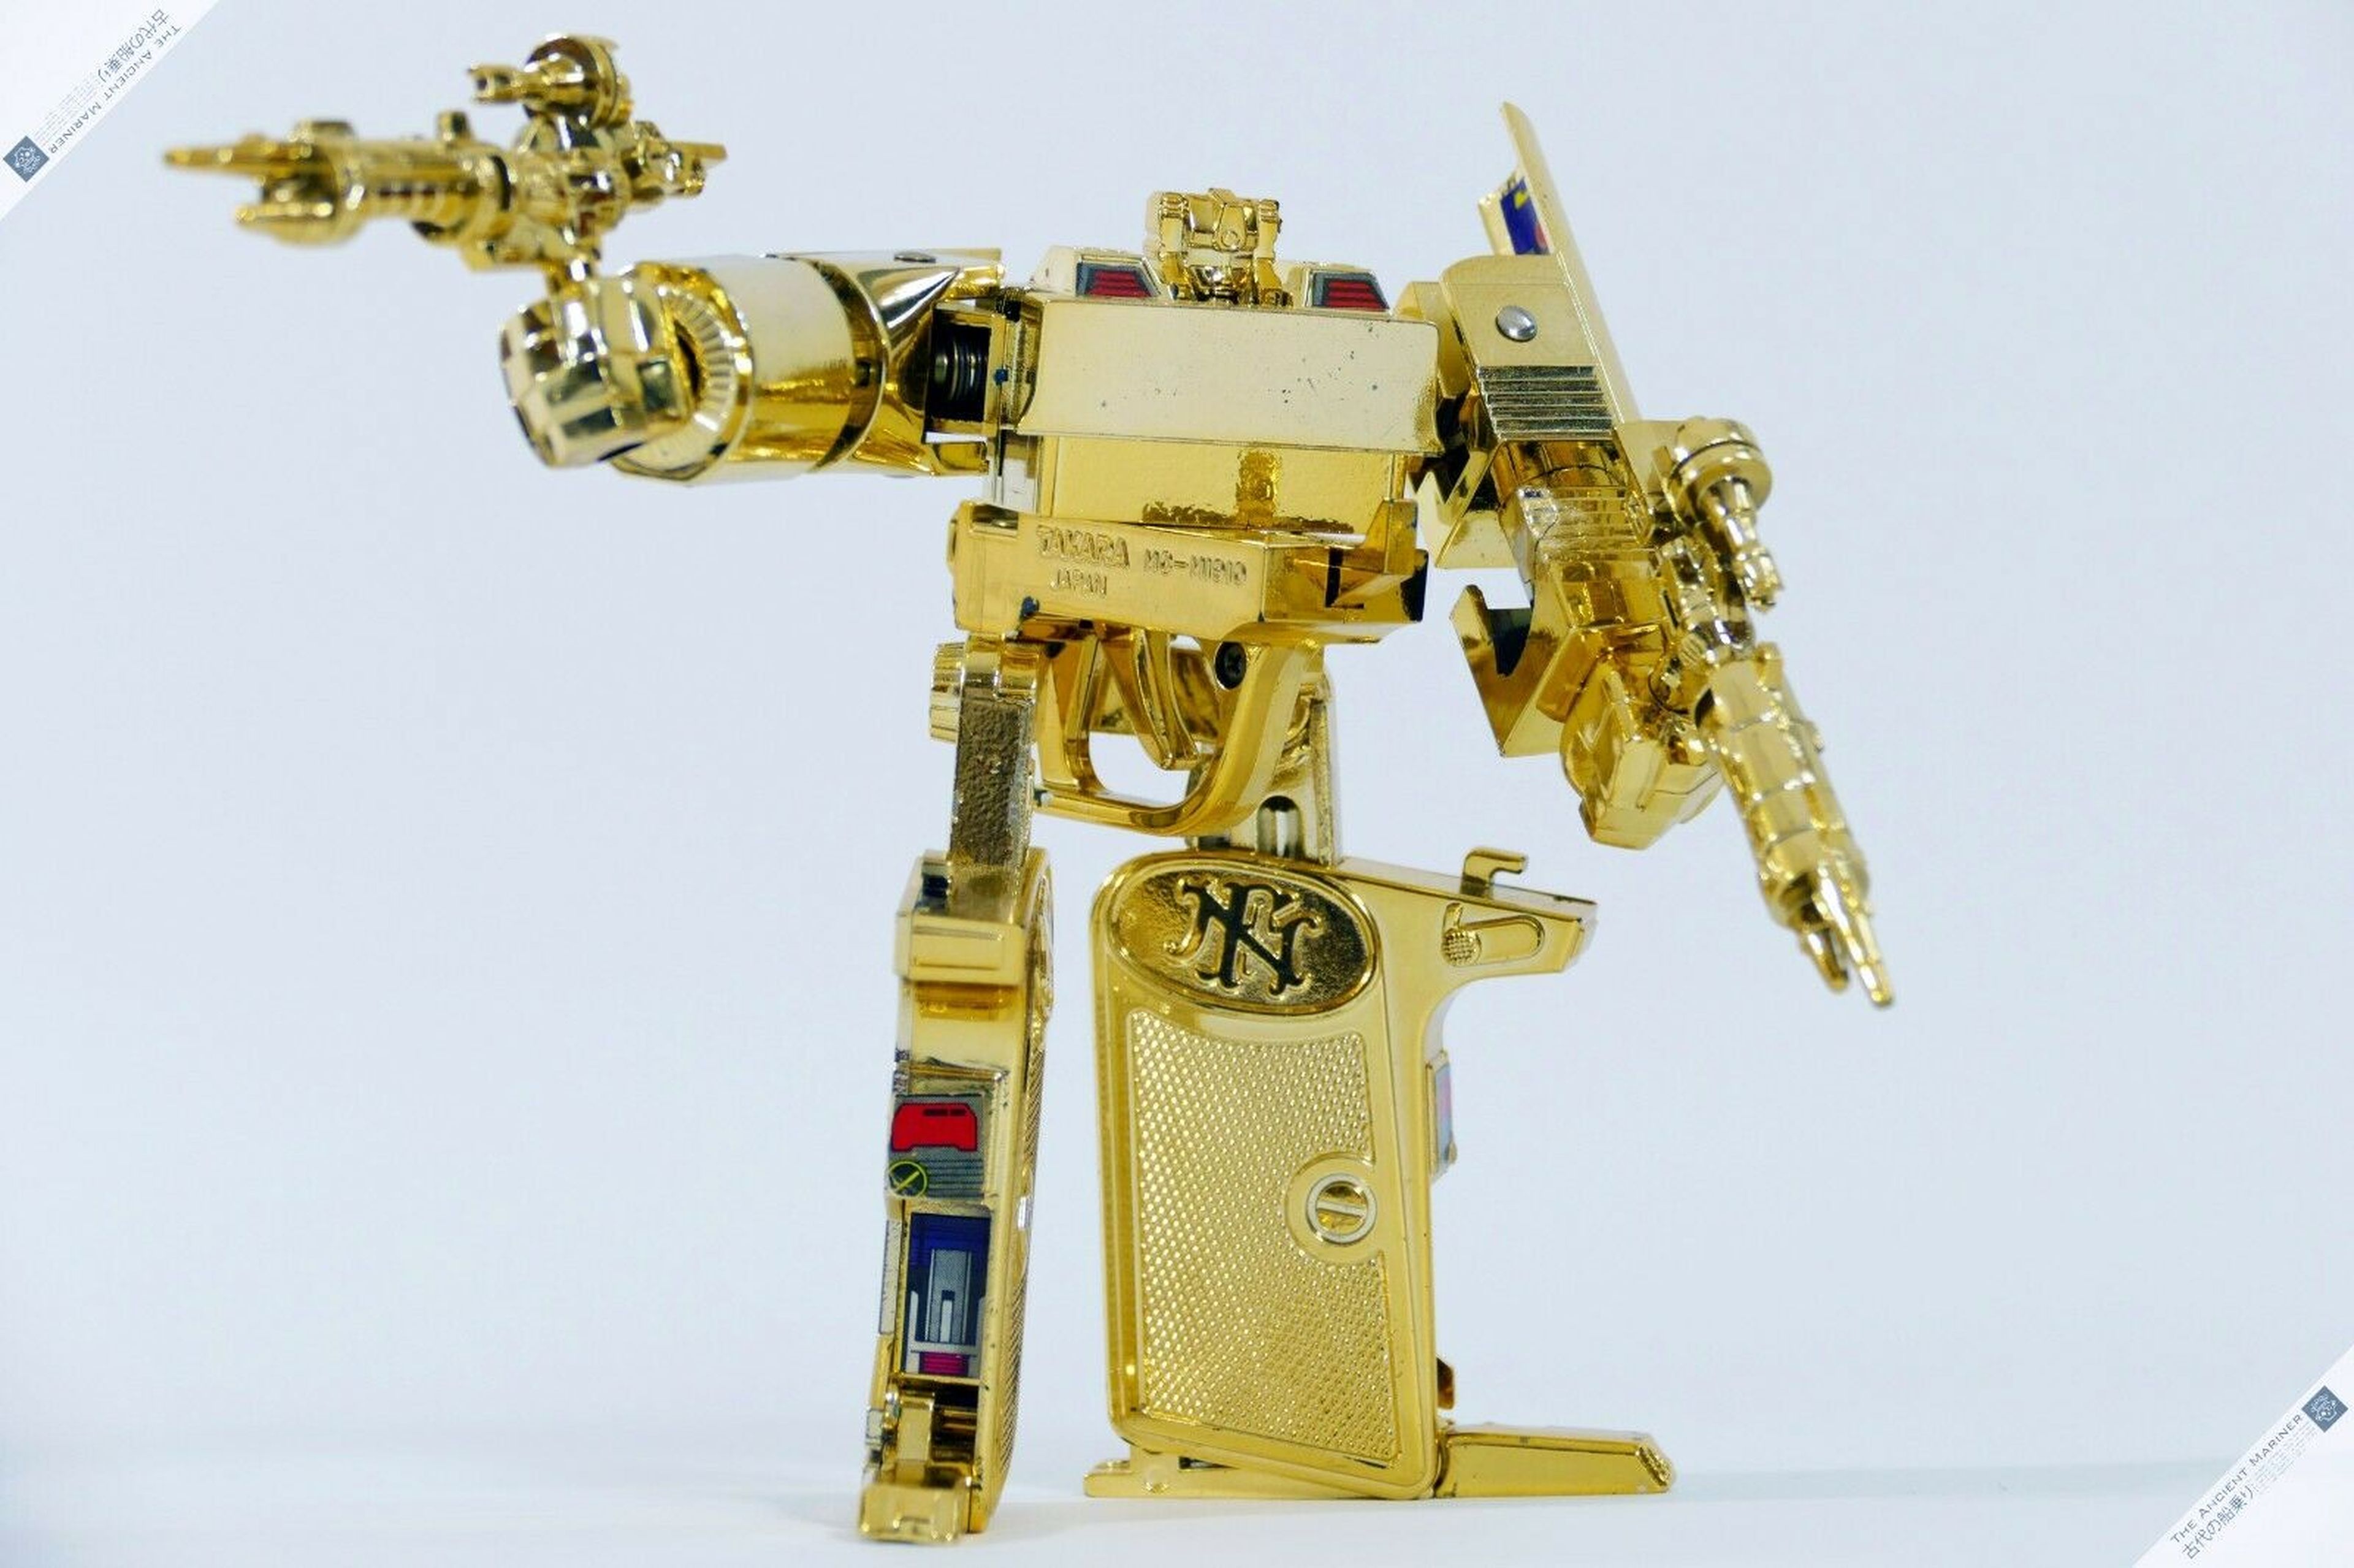 Microman Diaclone Browning robot MC-07 oro, un Transformer de primera generación.